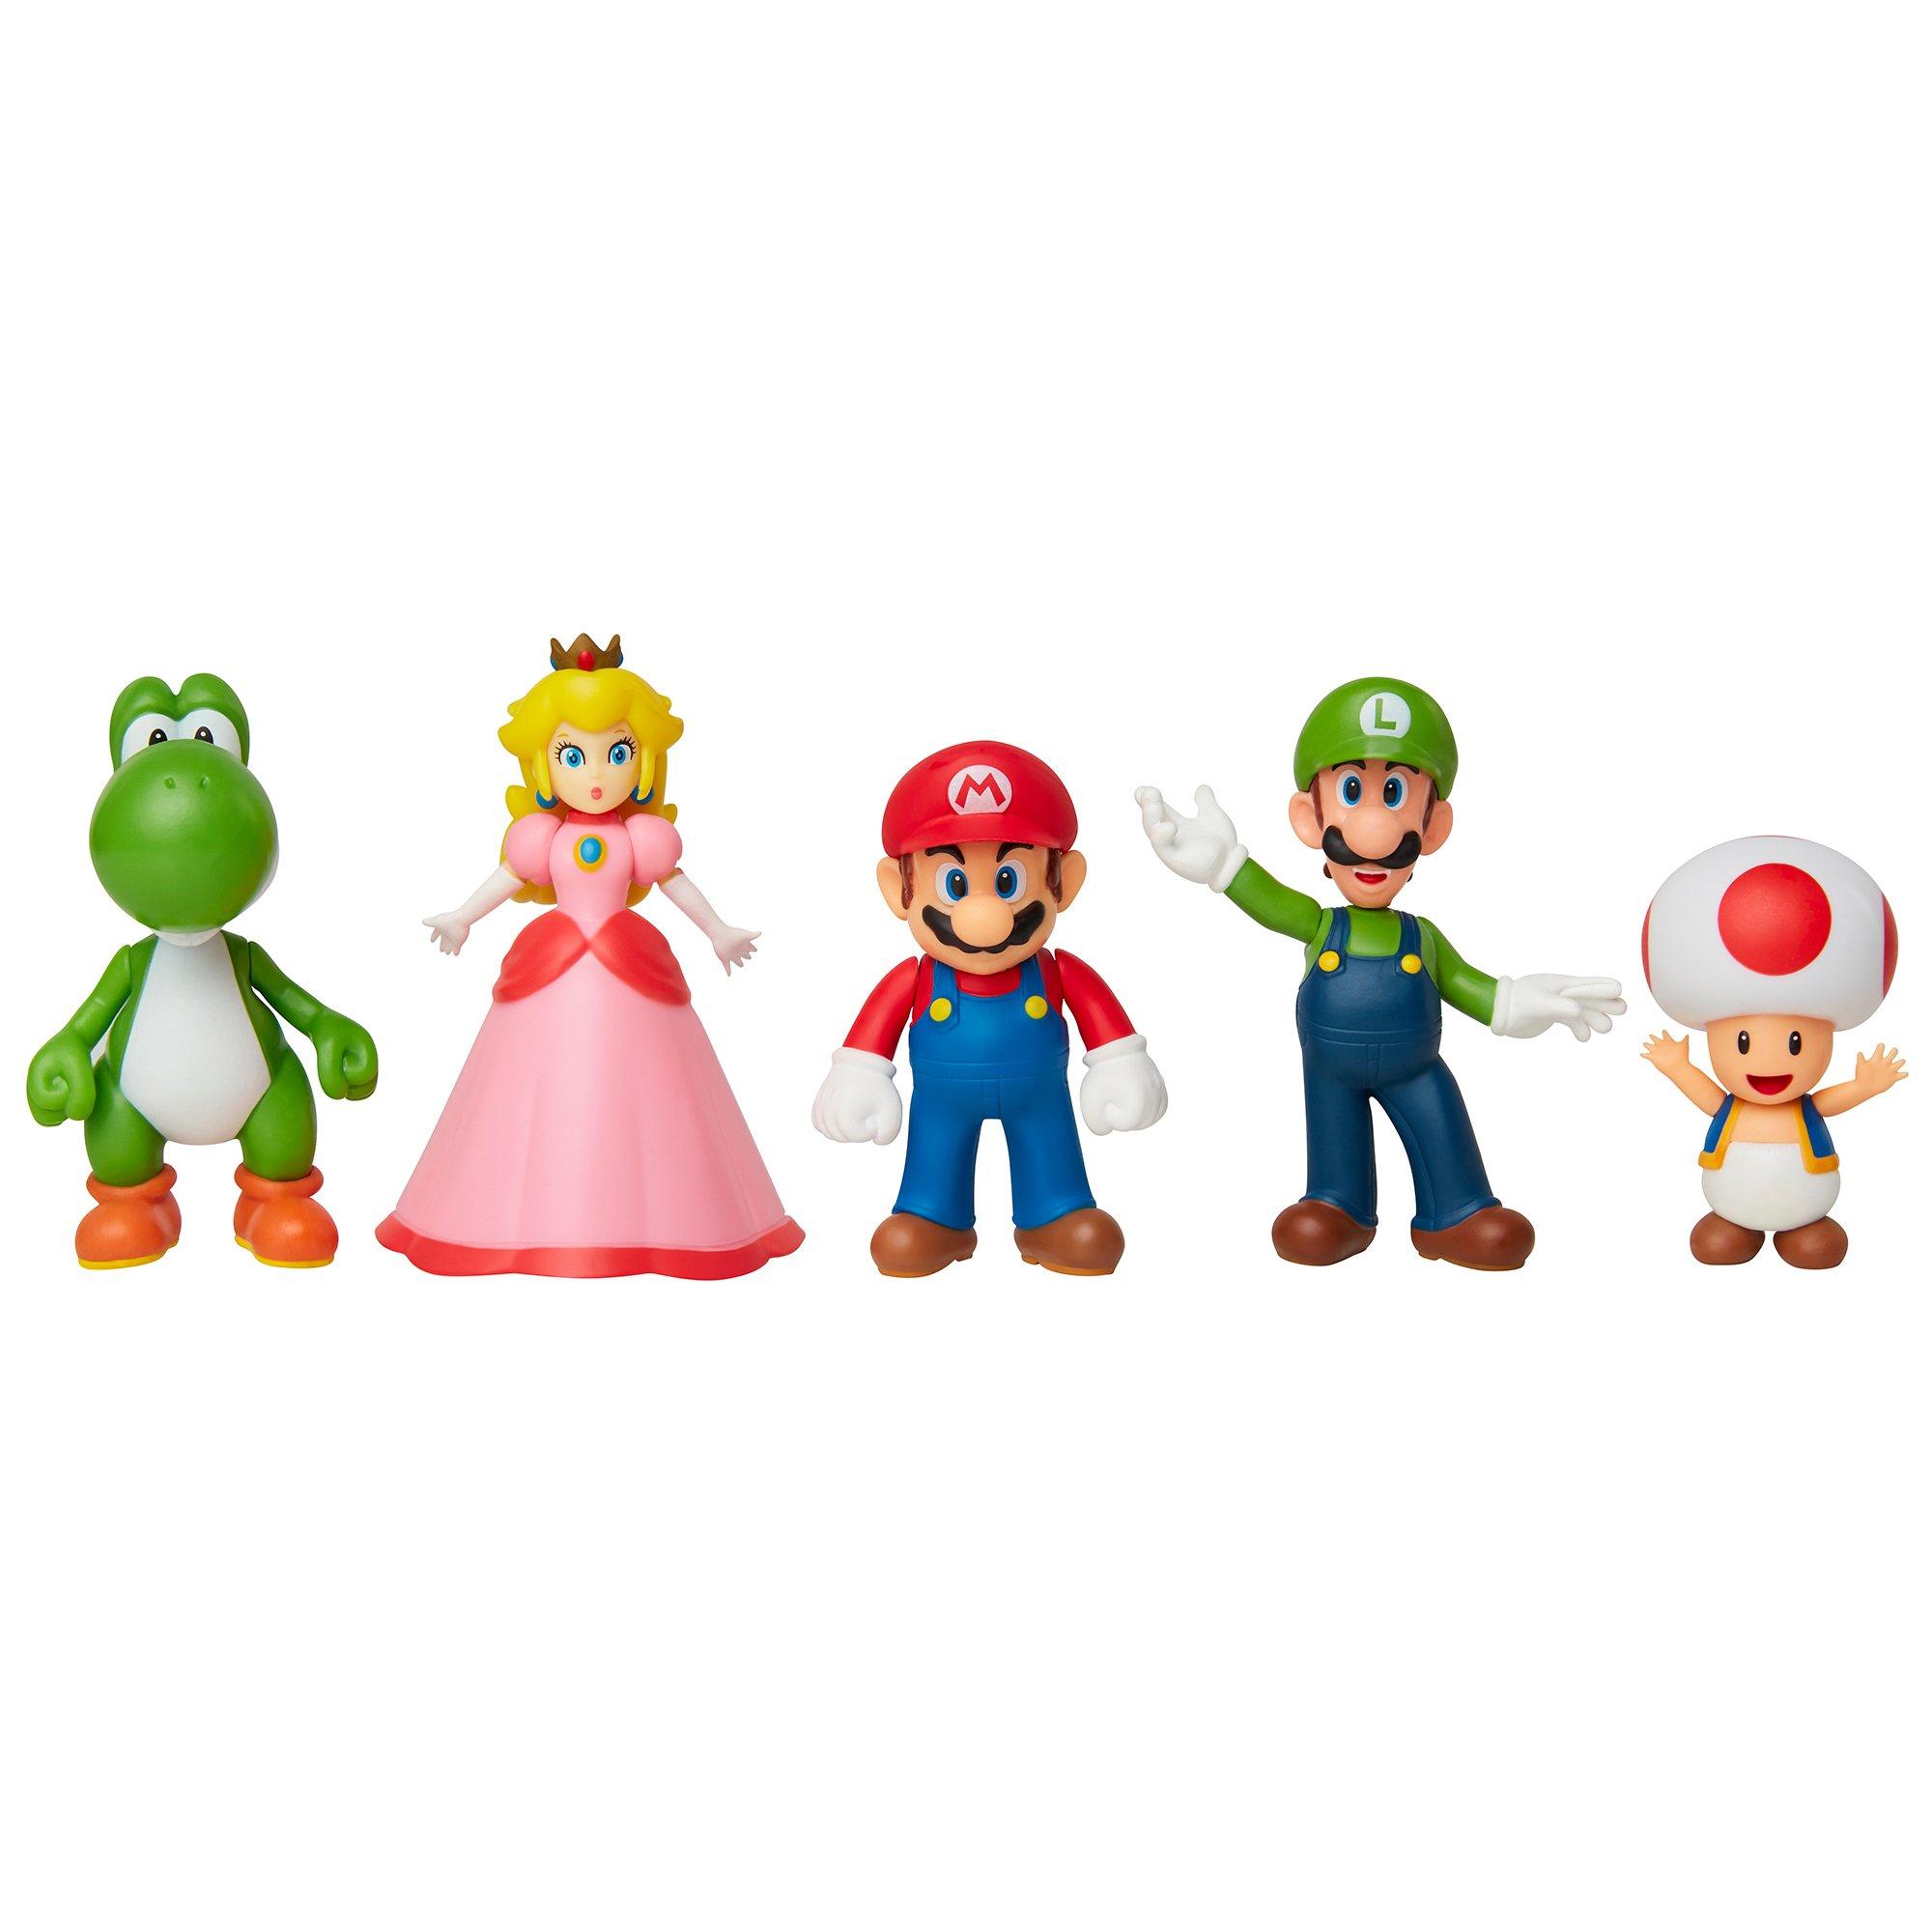 Nintendo super mario personaggi articolati 10 cm, pacco da 3 - Toys Center